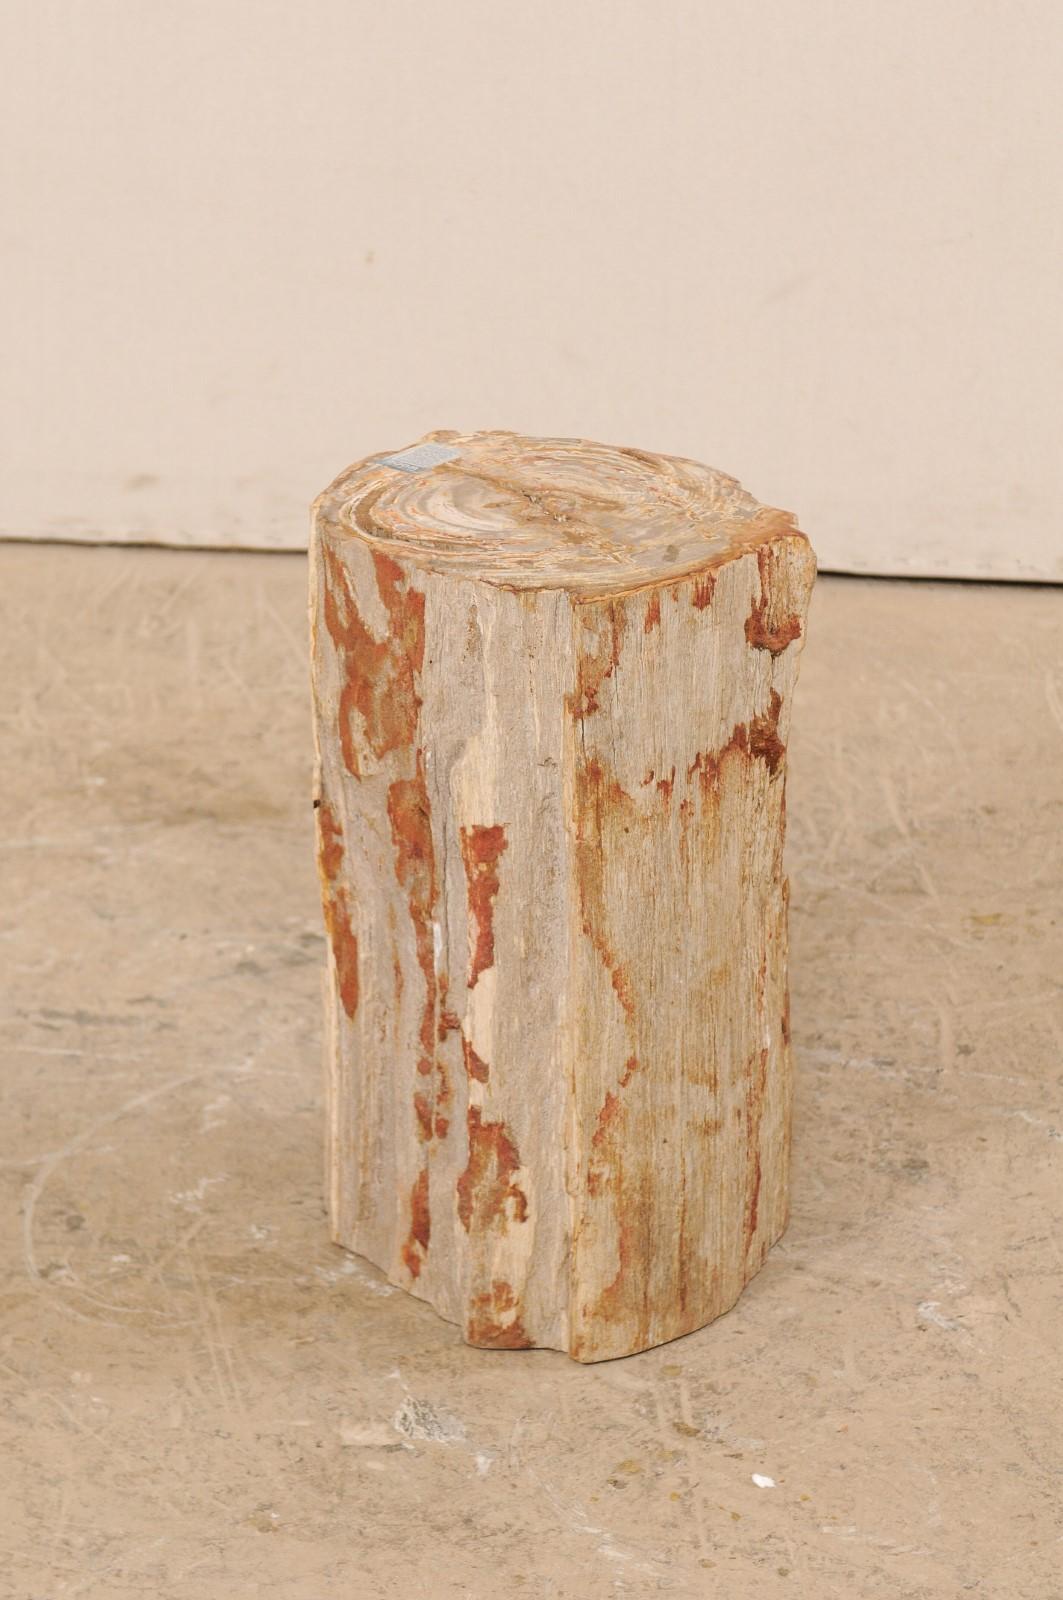 Ein einzelner Getränketisch (oder Hocker) aus versteinertem Holz. Dieser Sockeltisch aus versteinertem Holz hat eine glatt polierte Tischplatte und naturbelassene, scharfkantige Seiten. Die Farbpalette ist eine schöne Mischung aus Rost- und